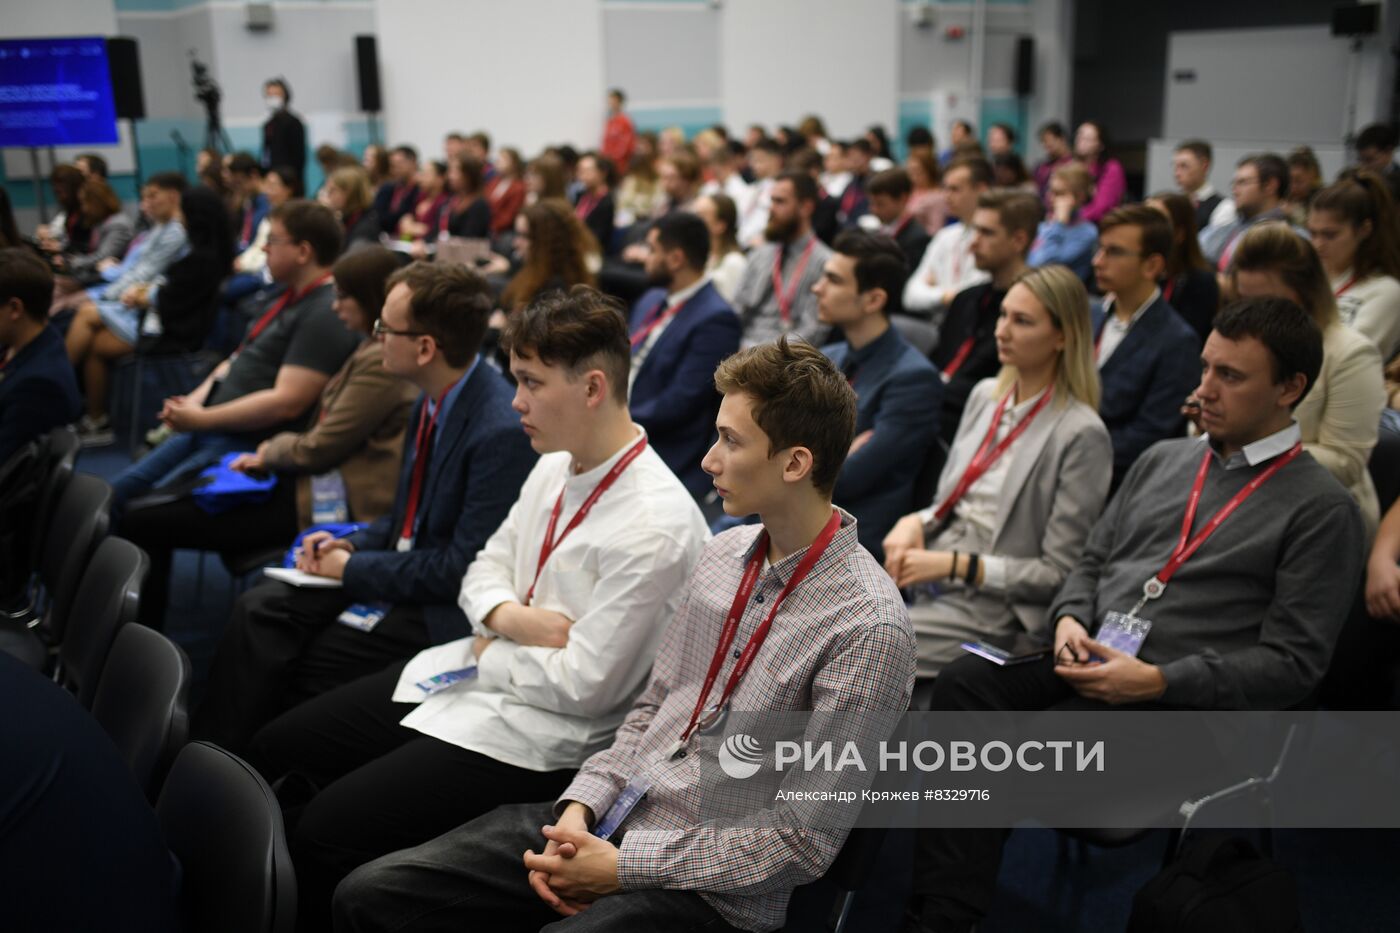 II КМУ-2022. Преимущества и перспективы исследовательской карьеры в России